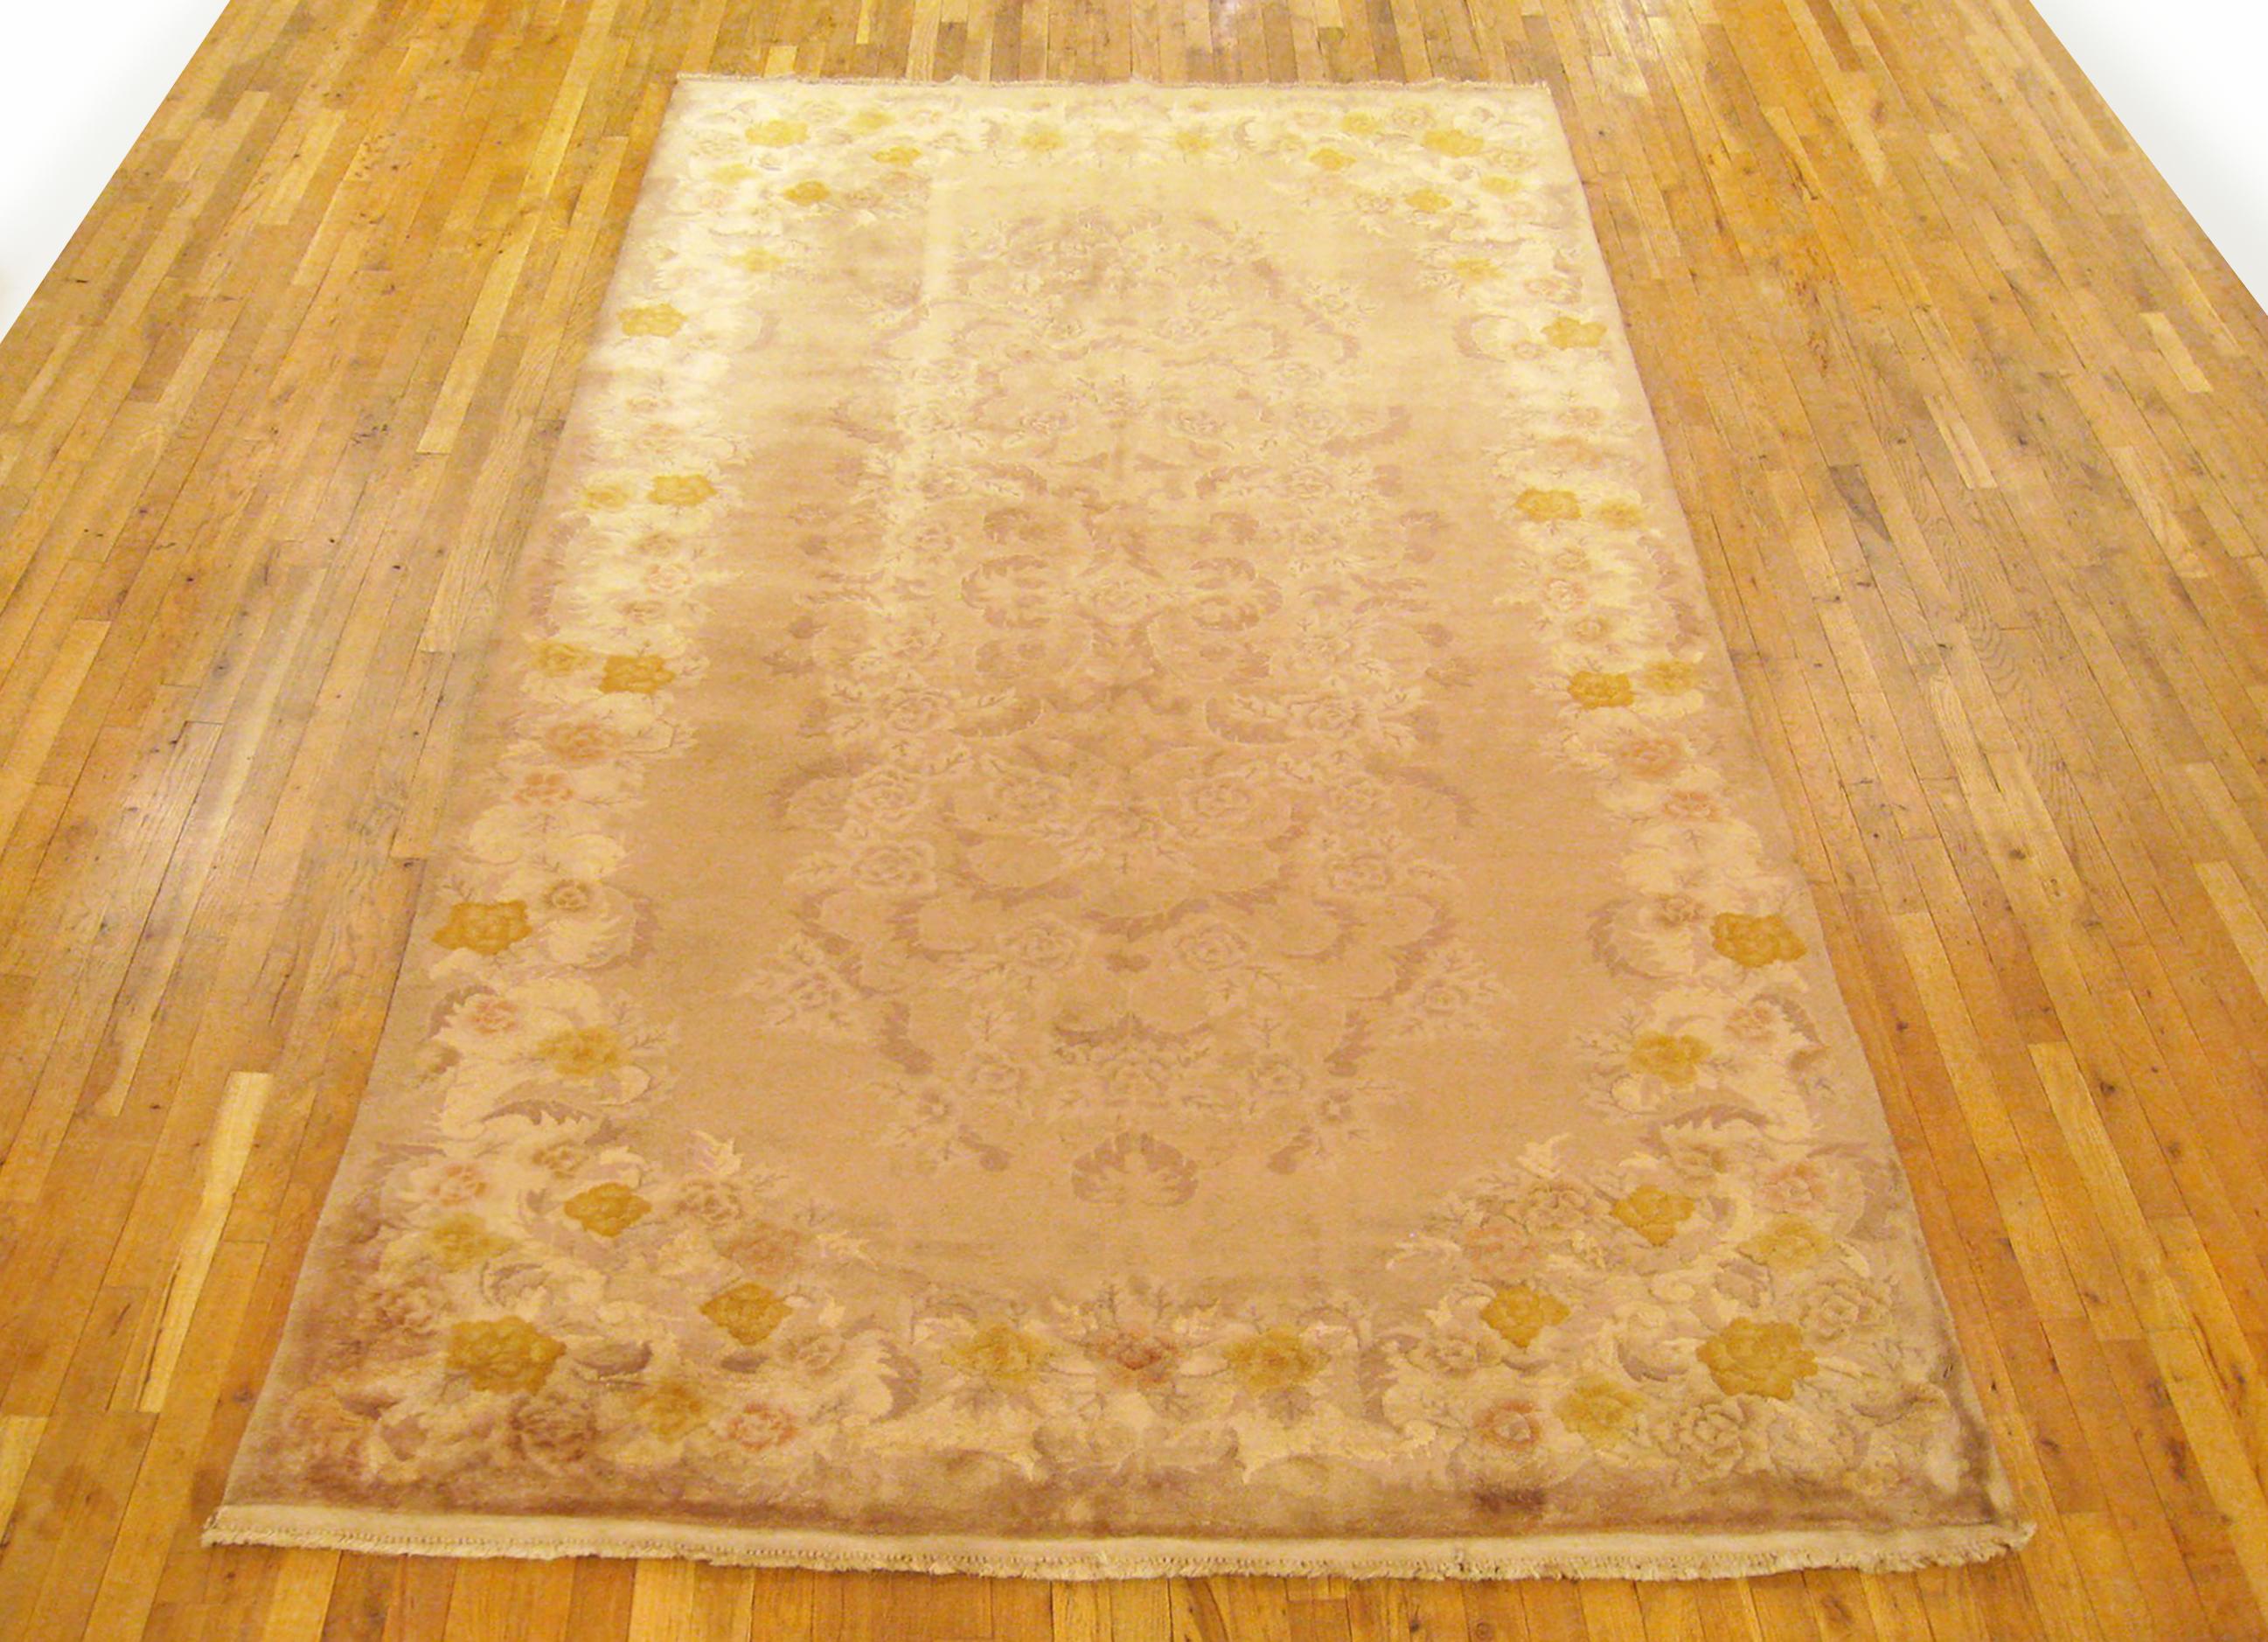 Chinesischer Art-Déco-Teppich, Galeriegröße, um 1940

Ein einzigartiger antiker chinesischer Orientteppich im Art-Déco-Stil, handgeknüpft mit mitteldickem Wollflor. Dieser wunderschöne handgeknüpfte Teppich zeigt florale Elemente in einem großen